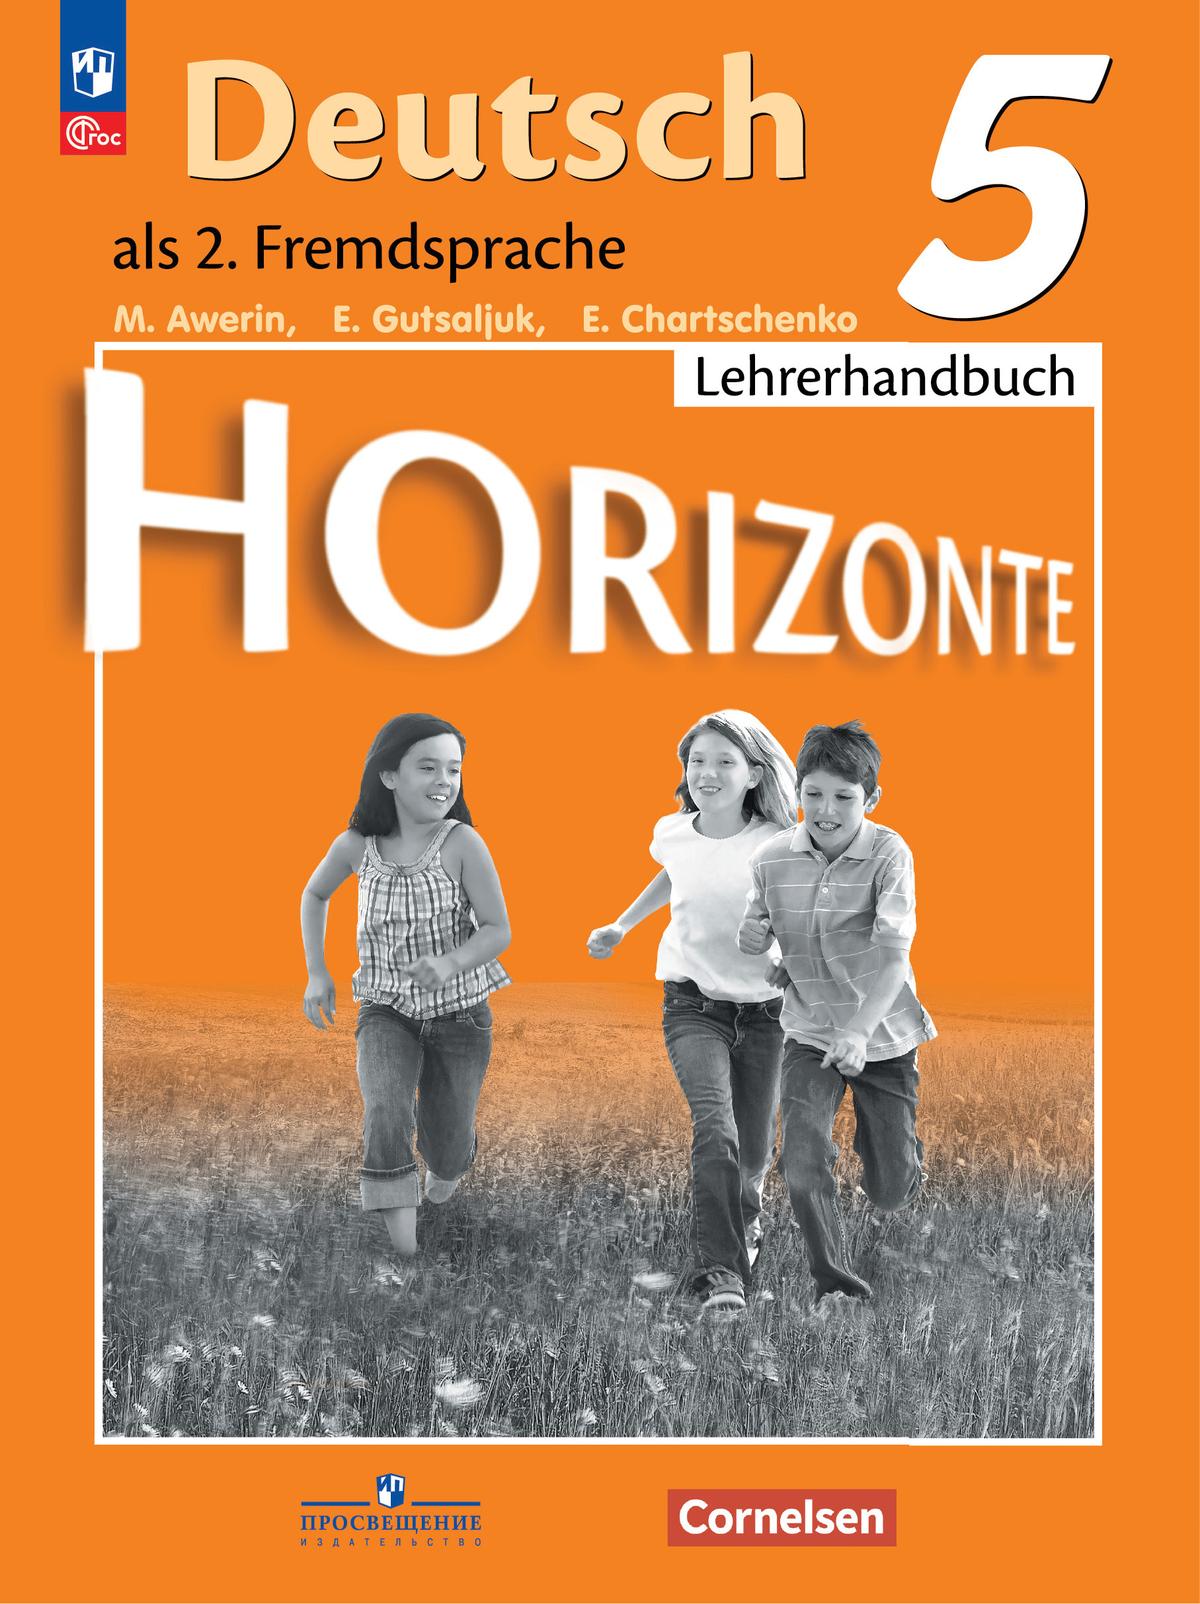 Немецкий язык. Второй иностранный язык. Книга для учителя. 5 класс. 1